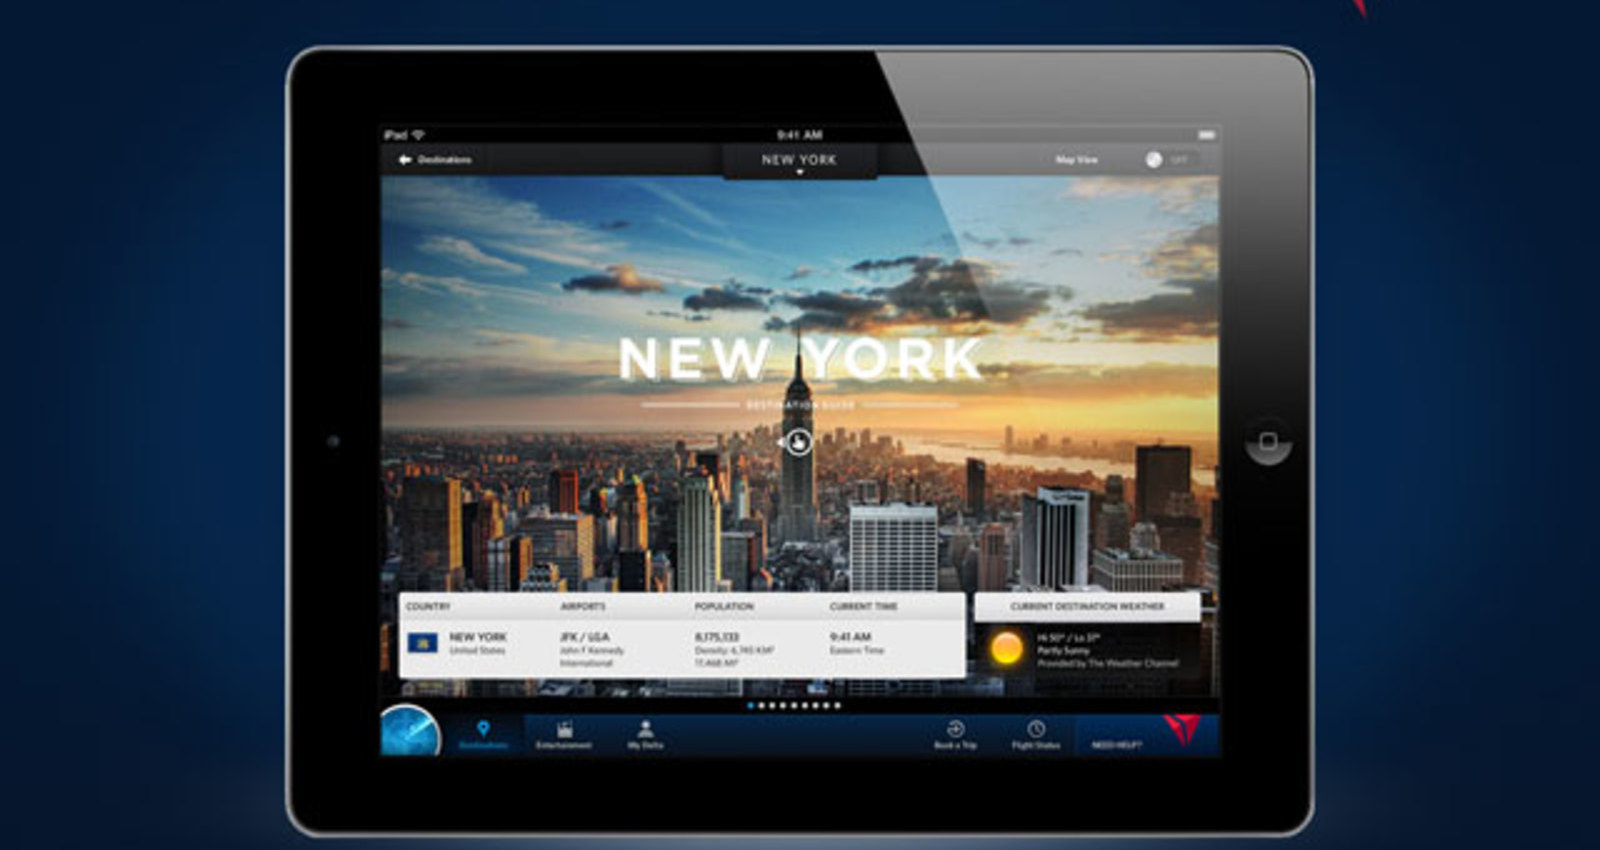 Fly Delta iPad App